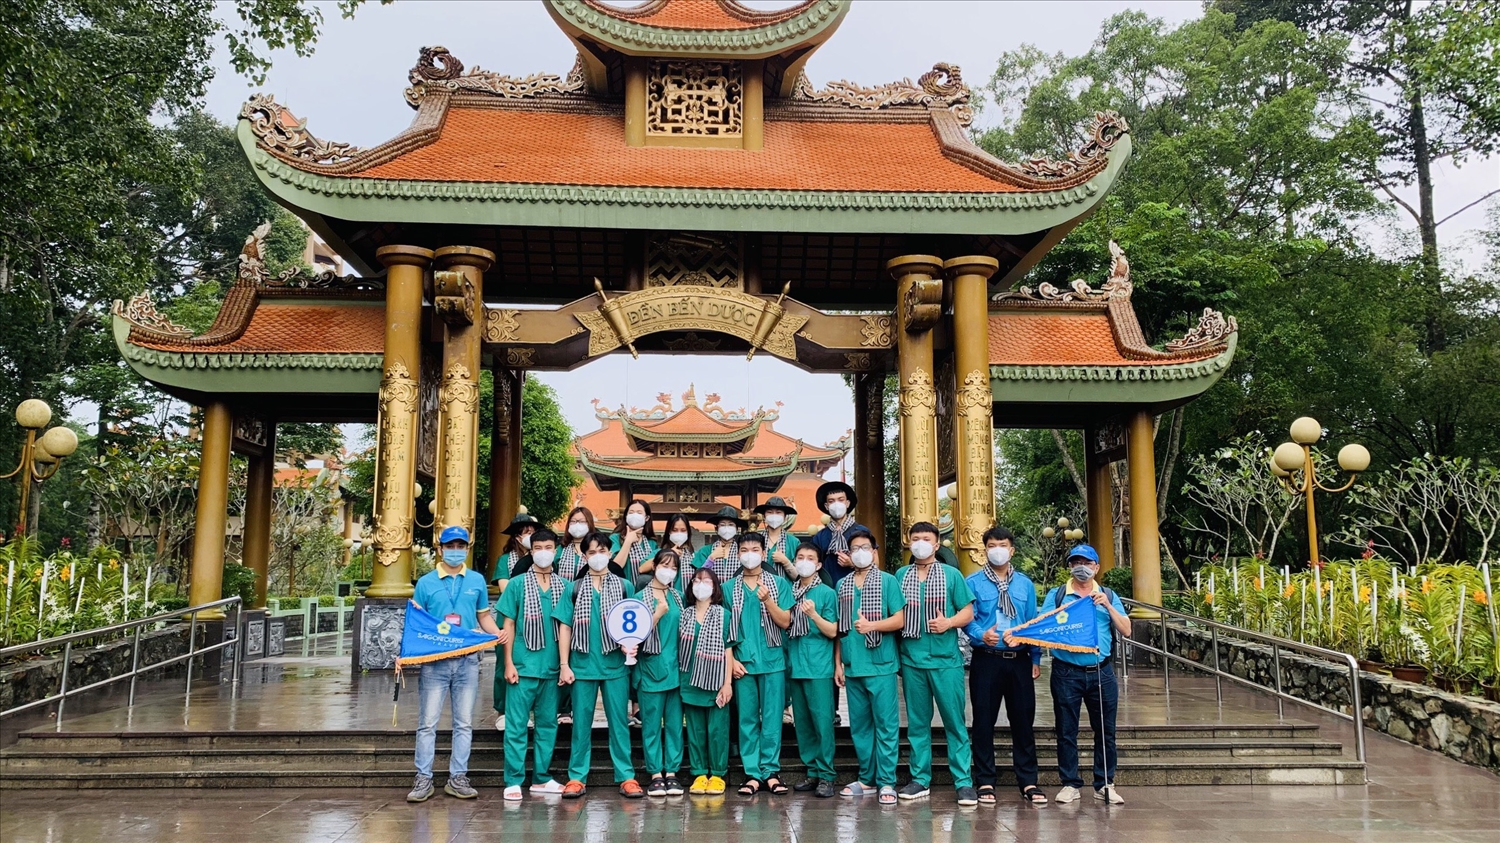 Tour du lịch bong bóng do Saigontourist tổ chức vào cuối tháng 9/2021 dành cho các y, bác sĩ nơi tuyến đầu tham quan địa đạo Củ Chi